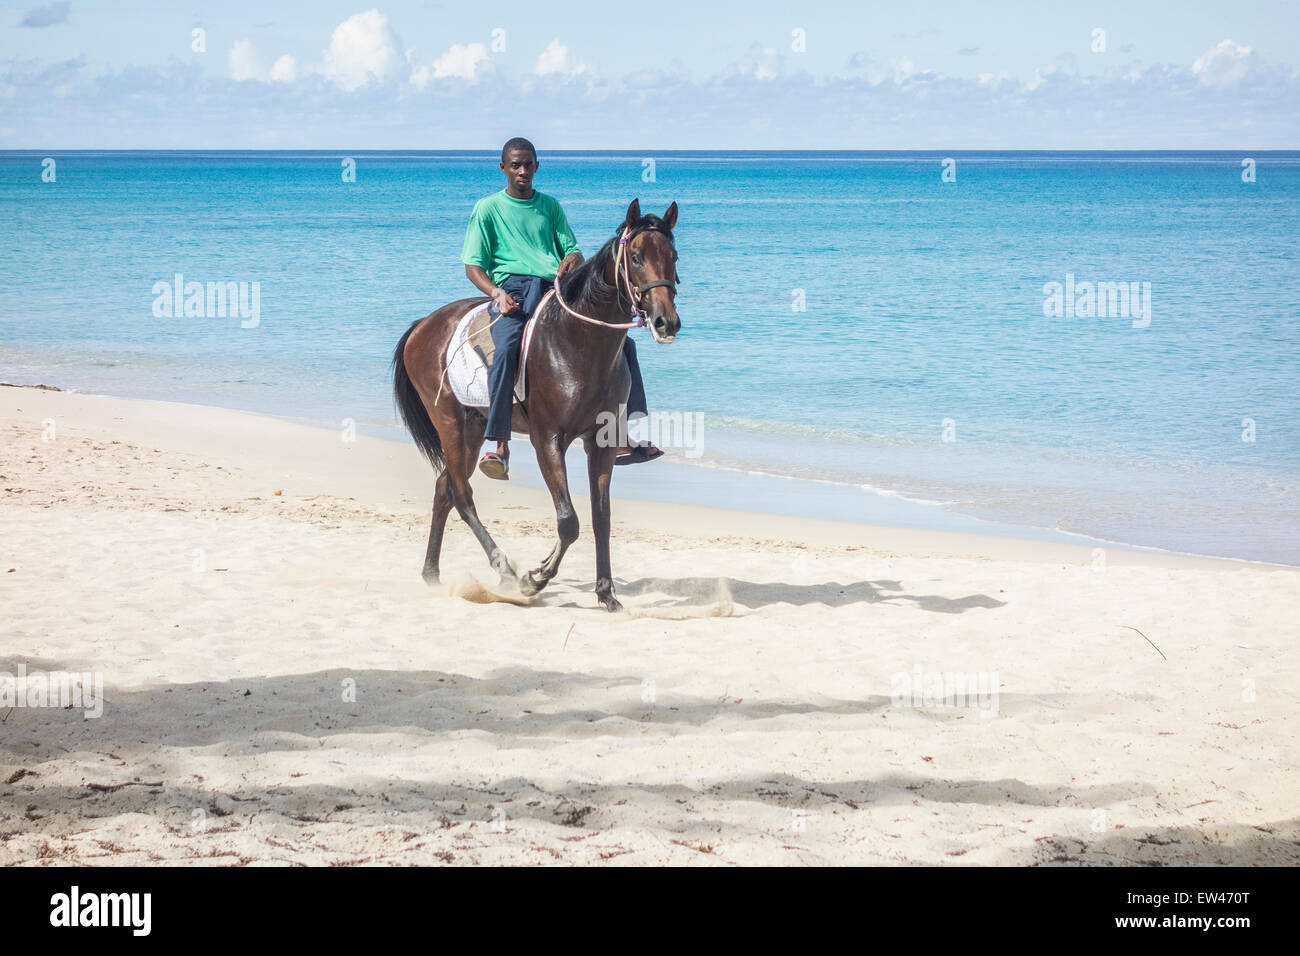 Un indigène, le carassin, Cruzan ou chevauche son cheval sur la plage de sable de la région de Sainte Croix, Îles Vierges des États-Unis. Banque D'Images